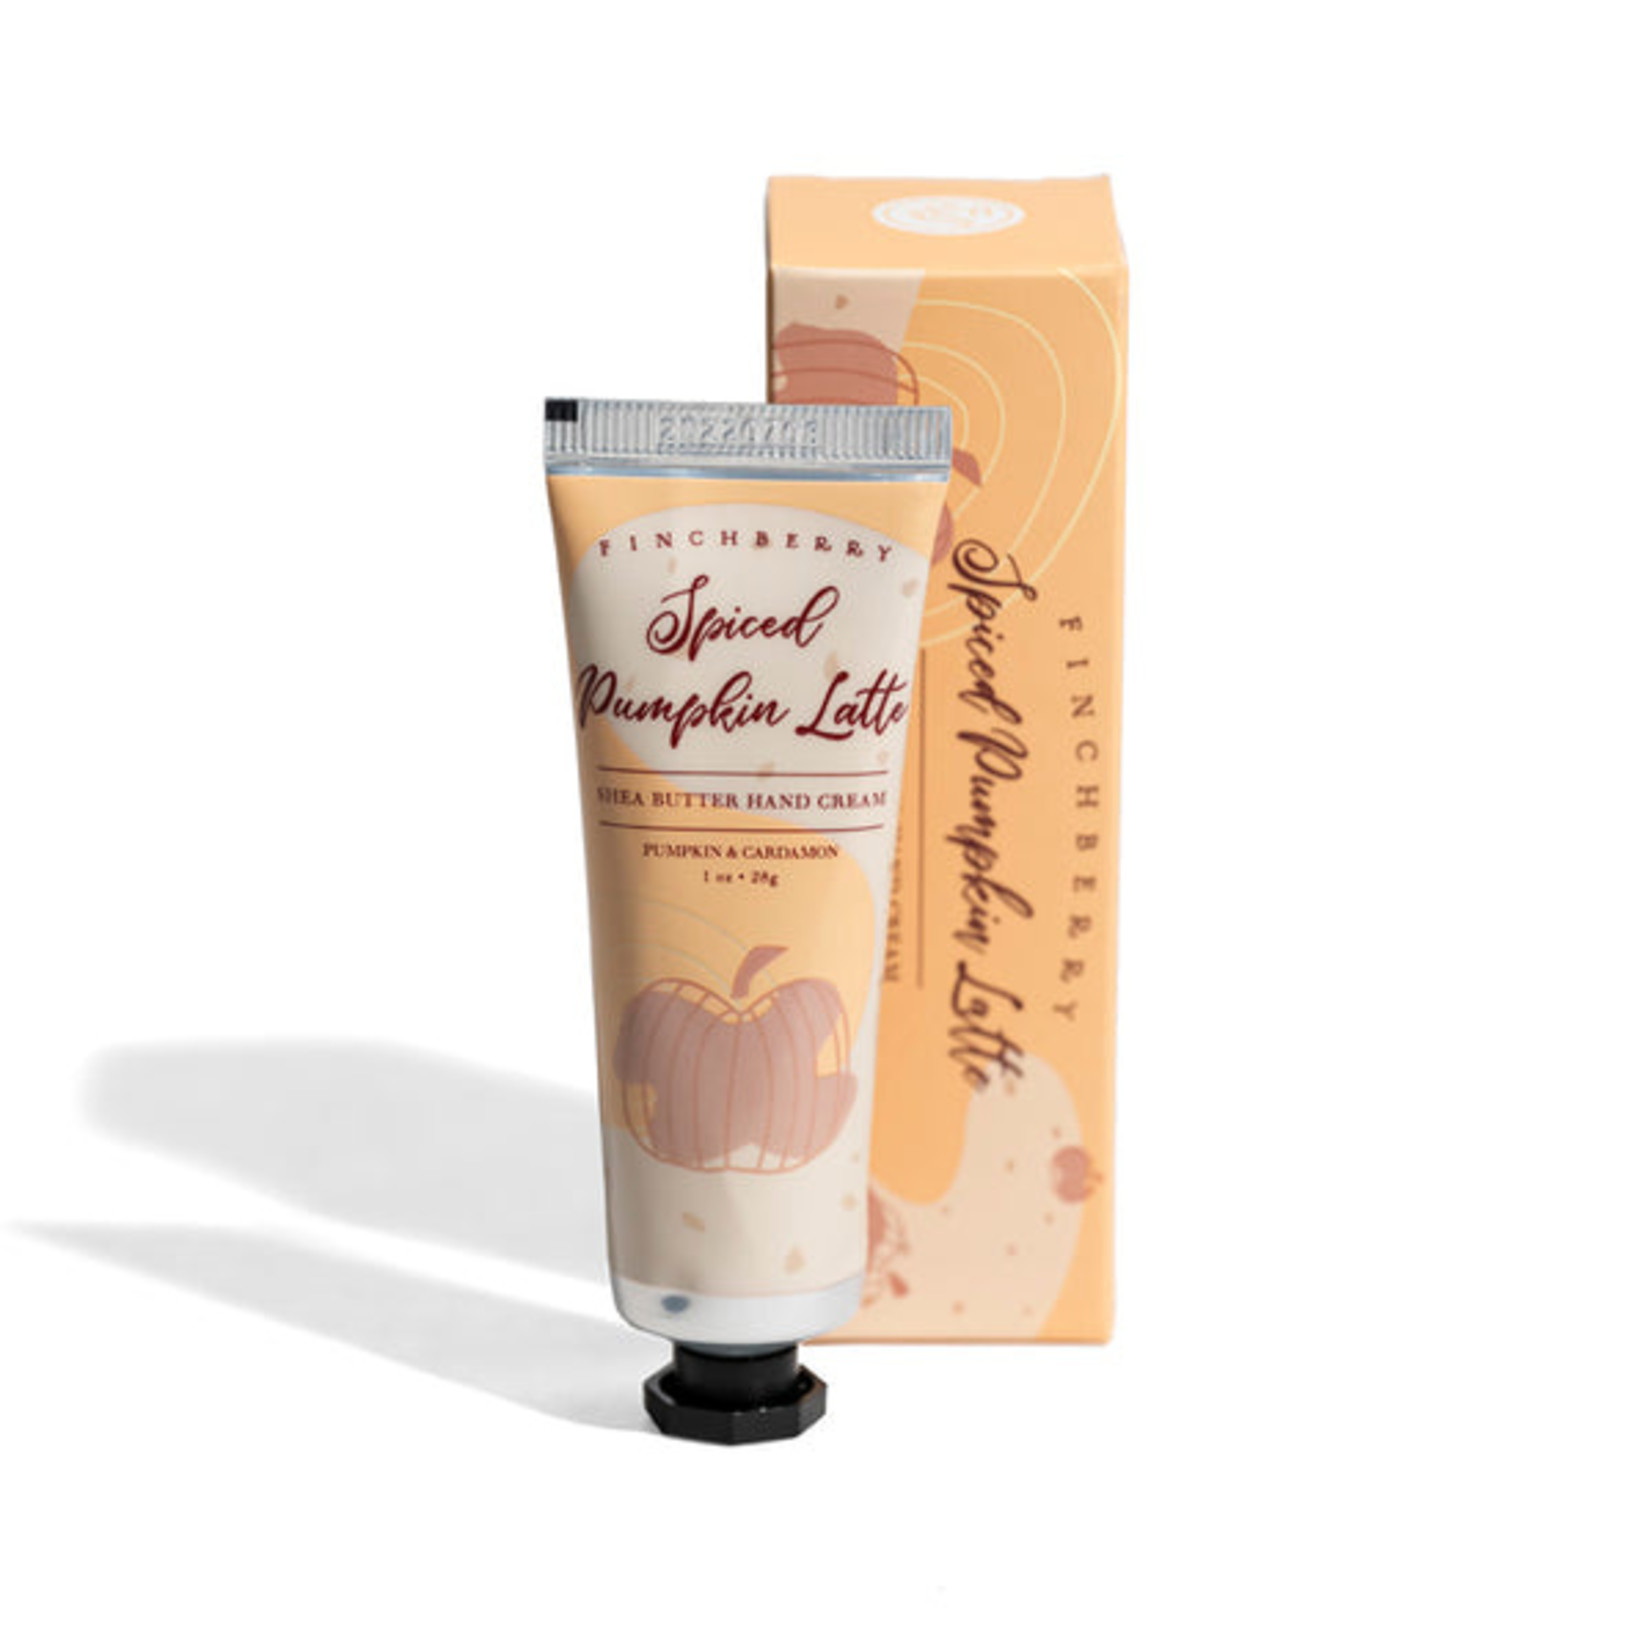 Finch Berry Travel Hand Cream-Spiced Pumpkin Latte